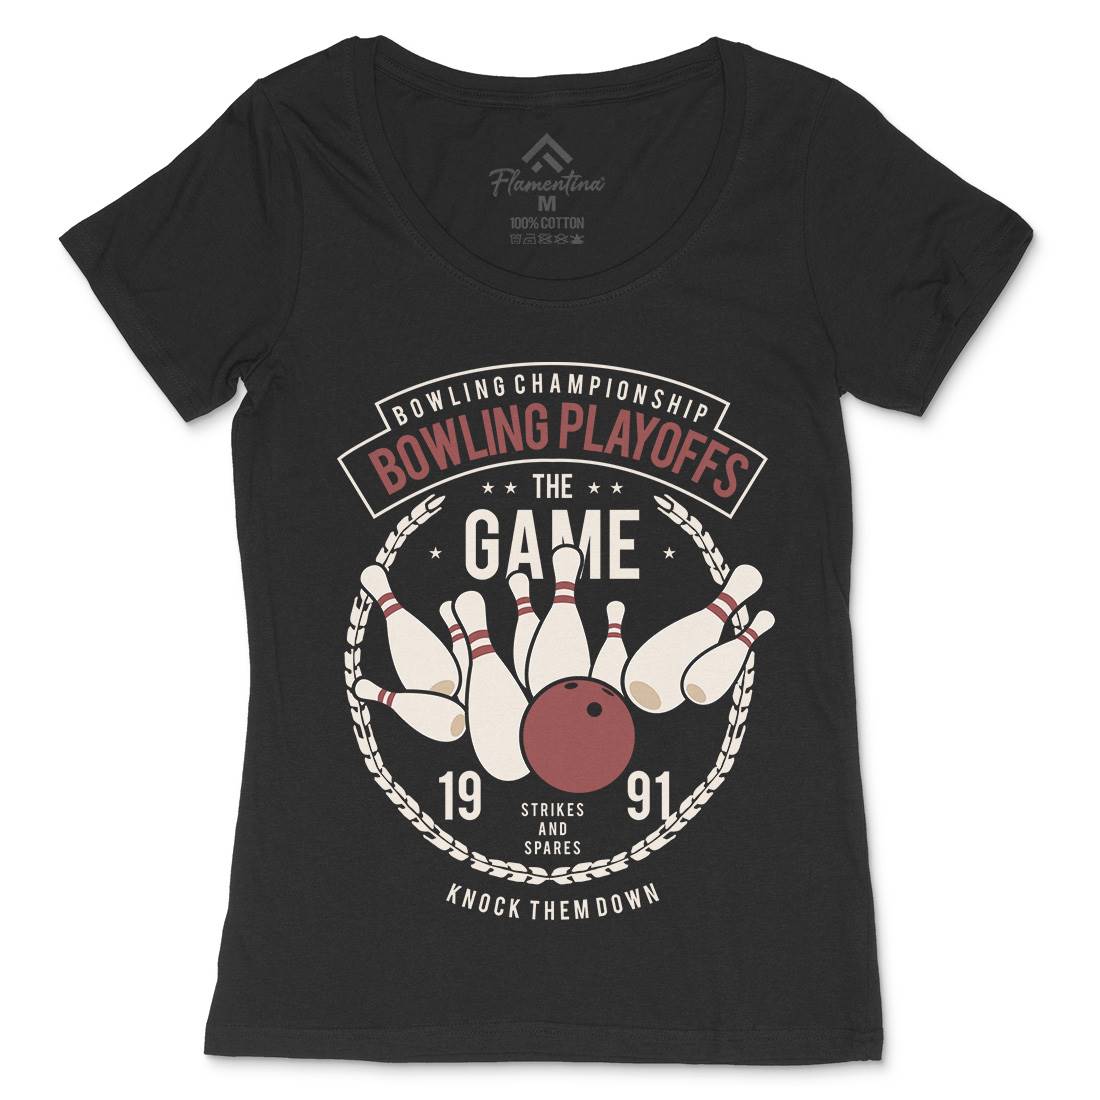 Bowling Playoffs Womens Scoop Neck T-Shirt Sport B384